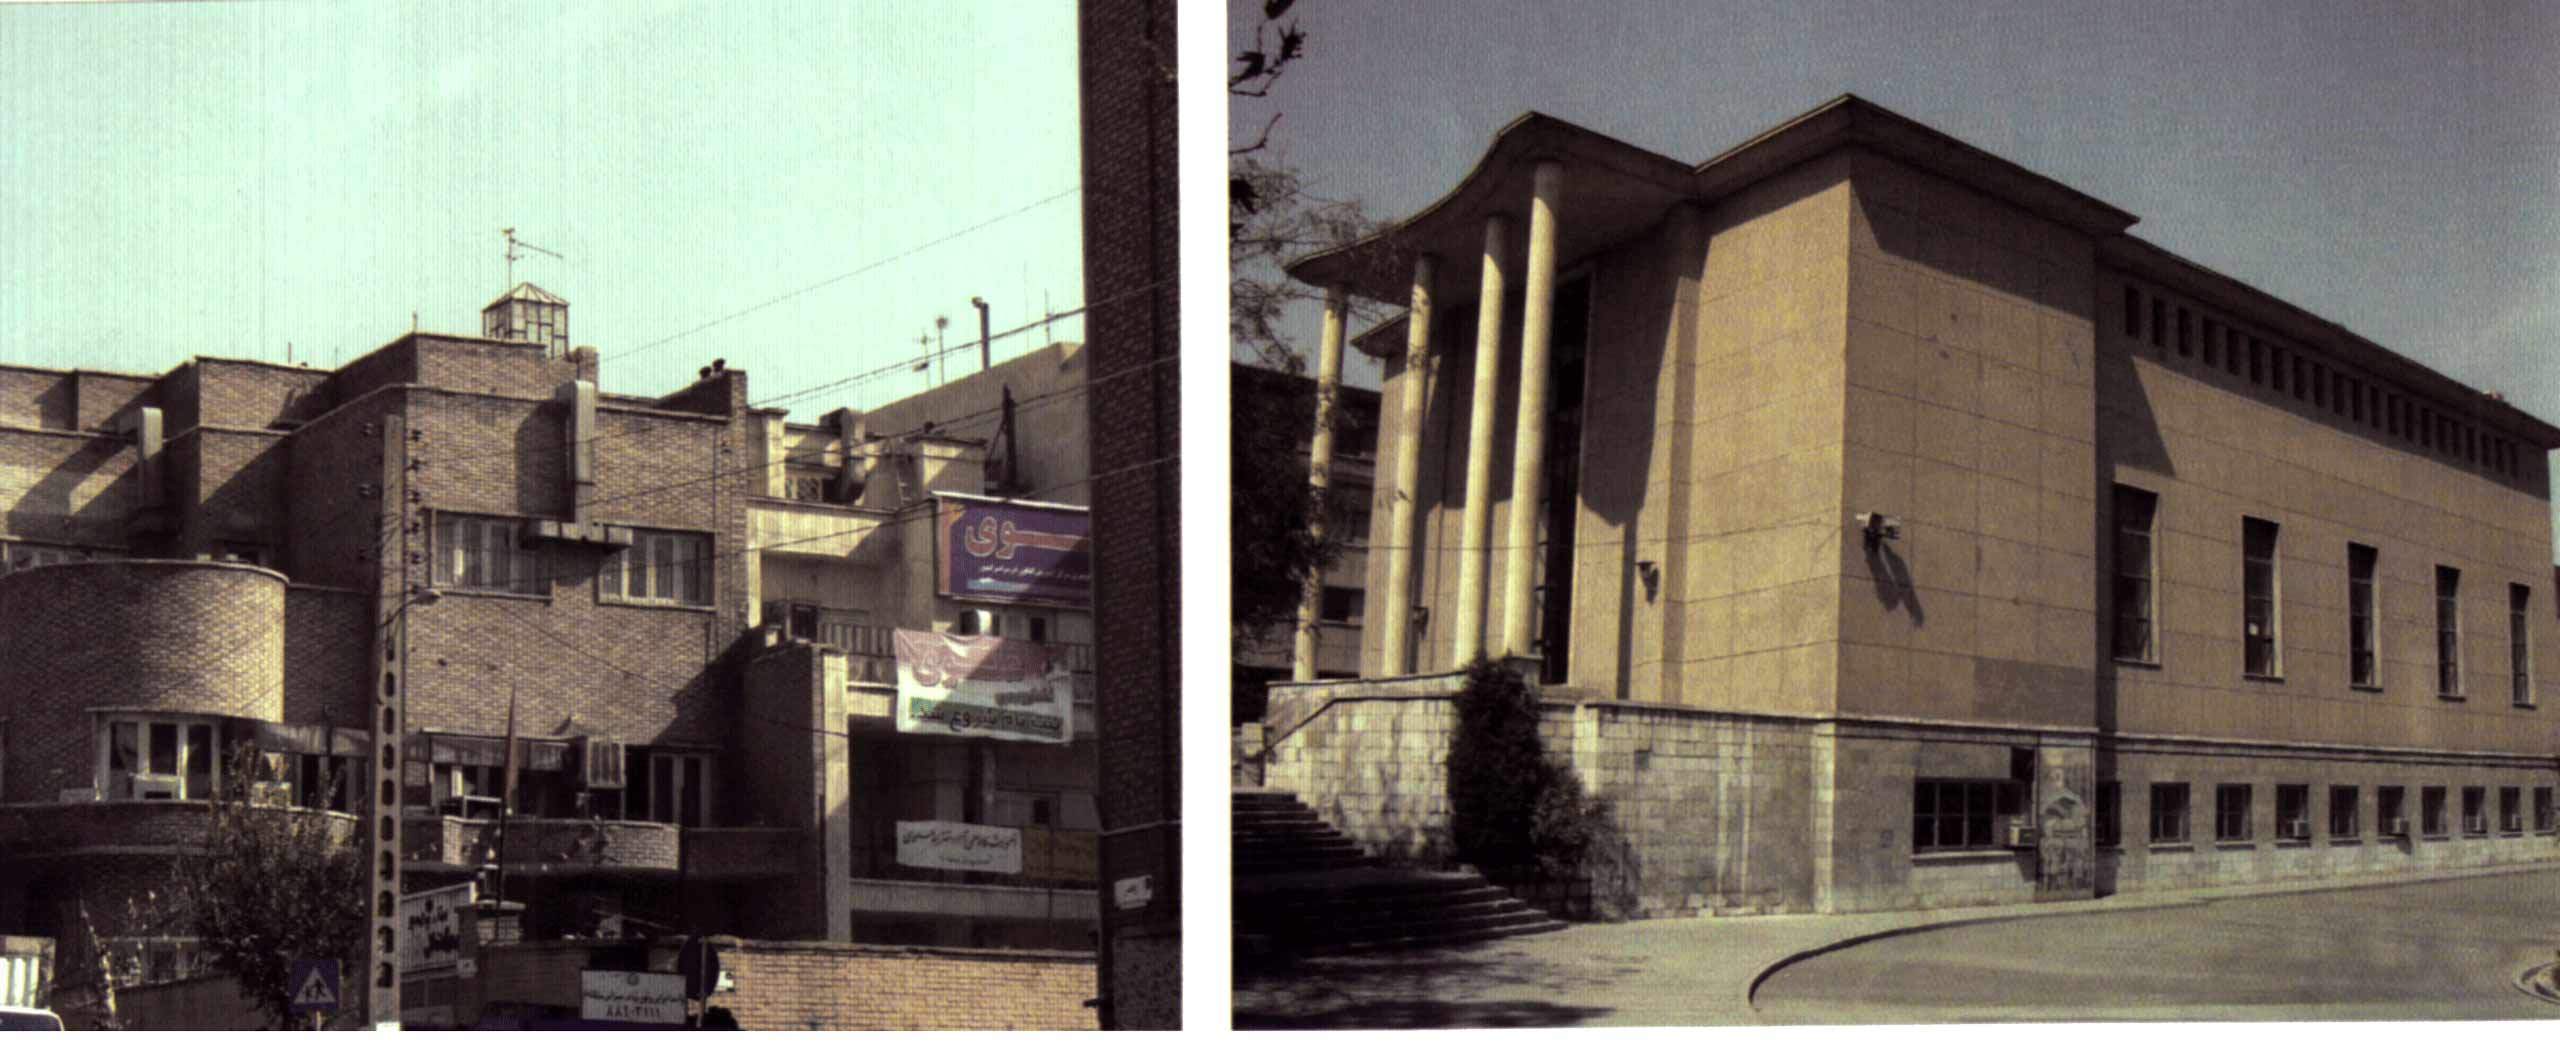 تاثیرپذیری دوره ای نمای ساختمان ها از مد و مصالح رایج در معماری معاصر تهران